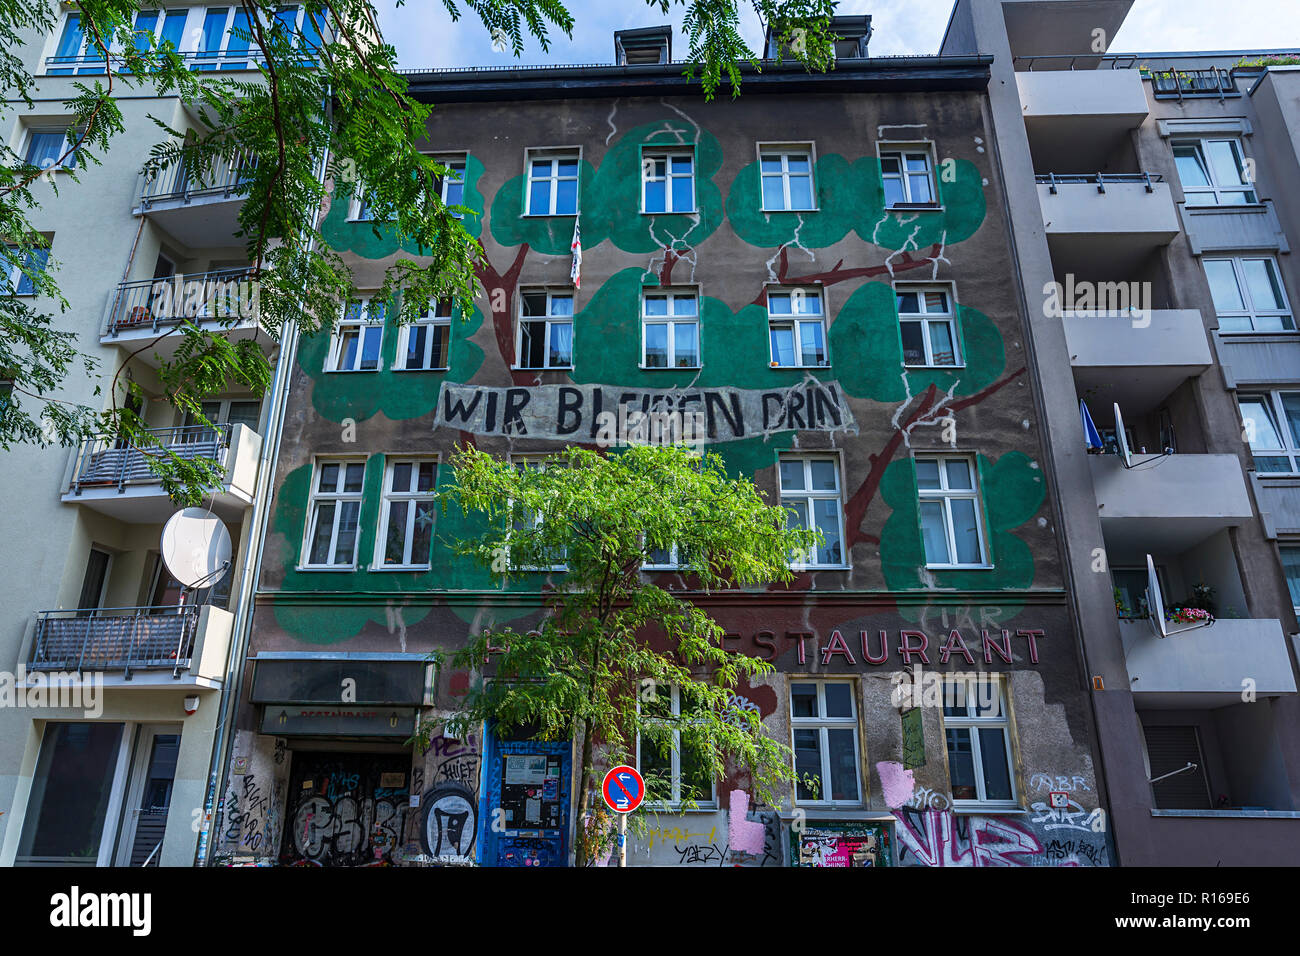 L'accroupissement, locataire protester contre la rénovation d'un bâtiment ancien, nous restons à l'intérieur, la peinture sur la façade, Kreuzberg, Berlin Banque D'Images